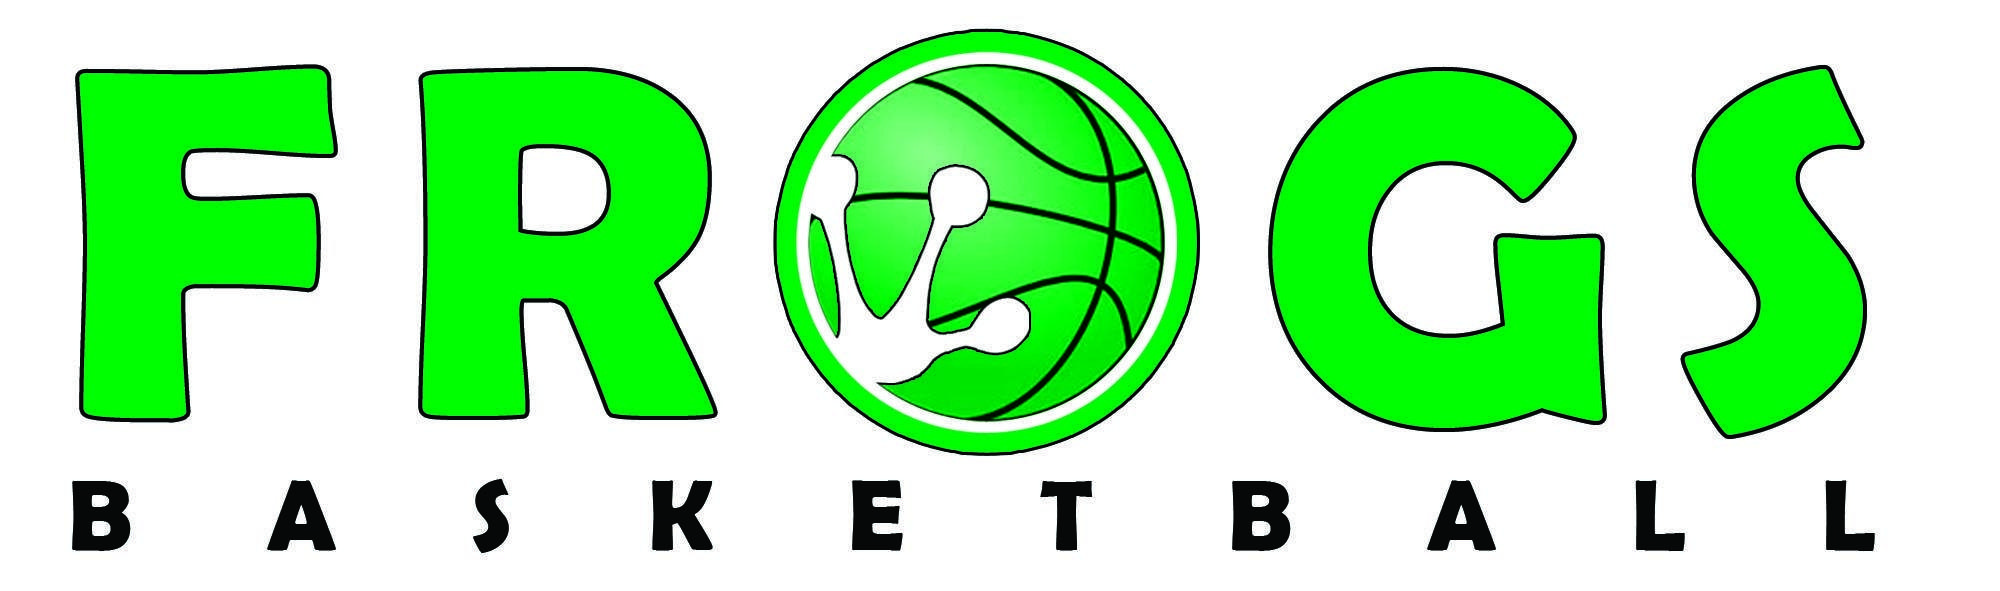 Frog Basketball Logo - Frog Playing Basketball